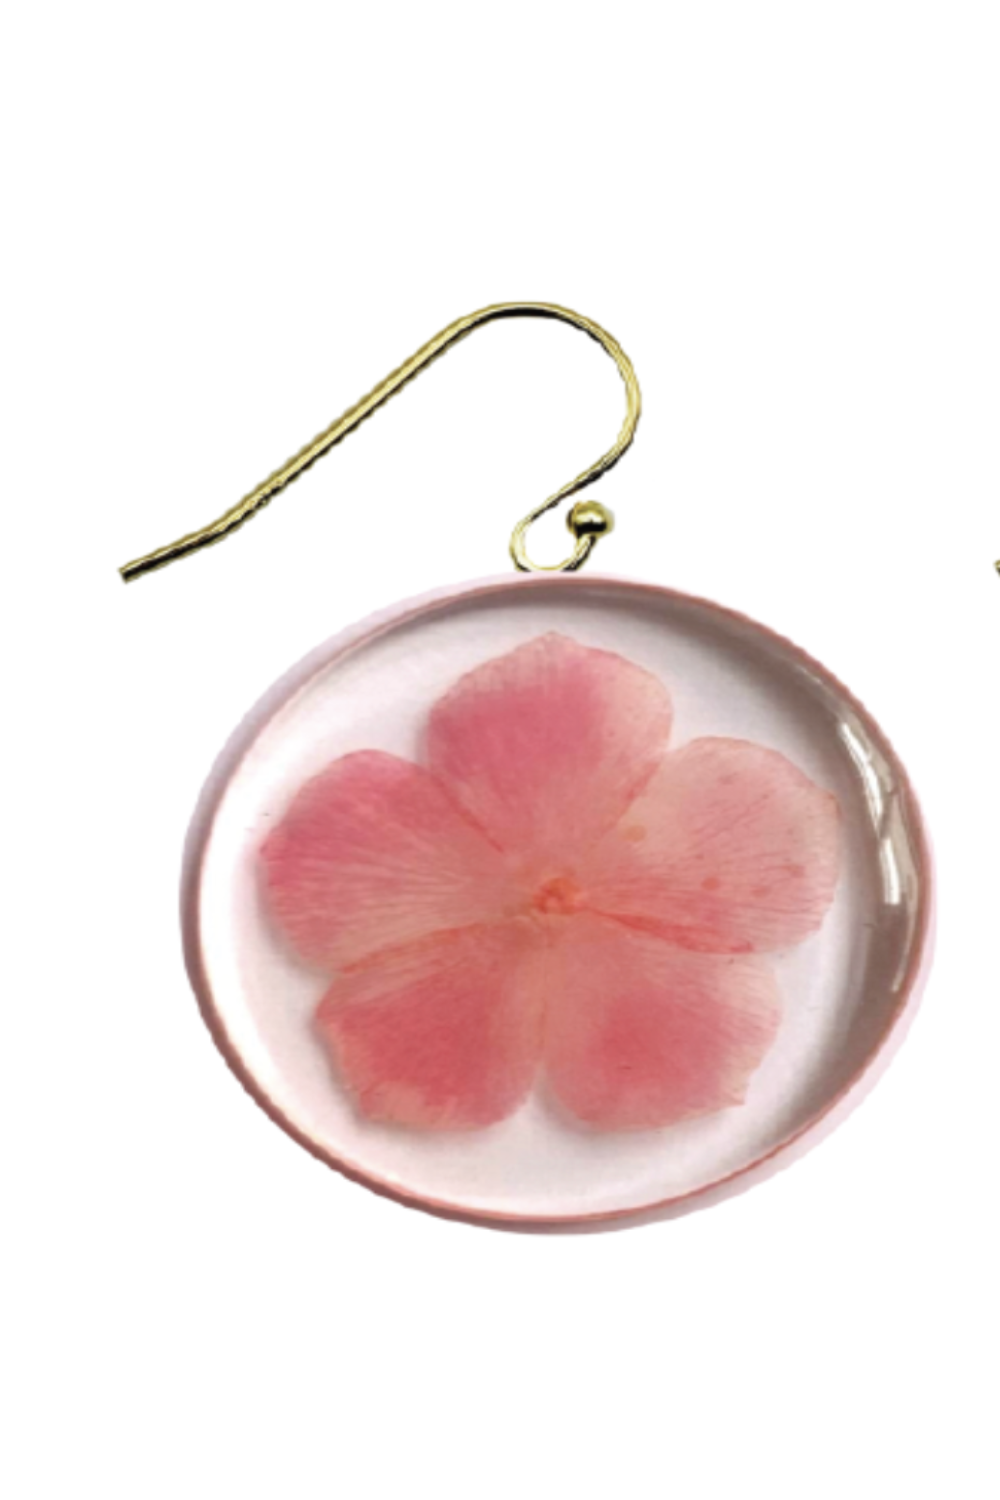 Dauphinette - Phlox Flower Earring: Gold